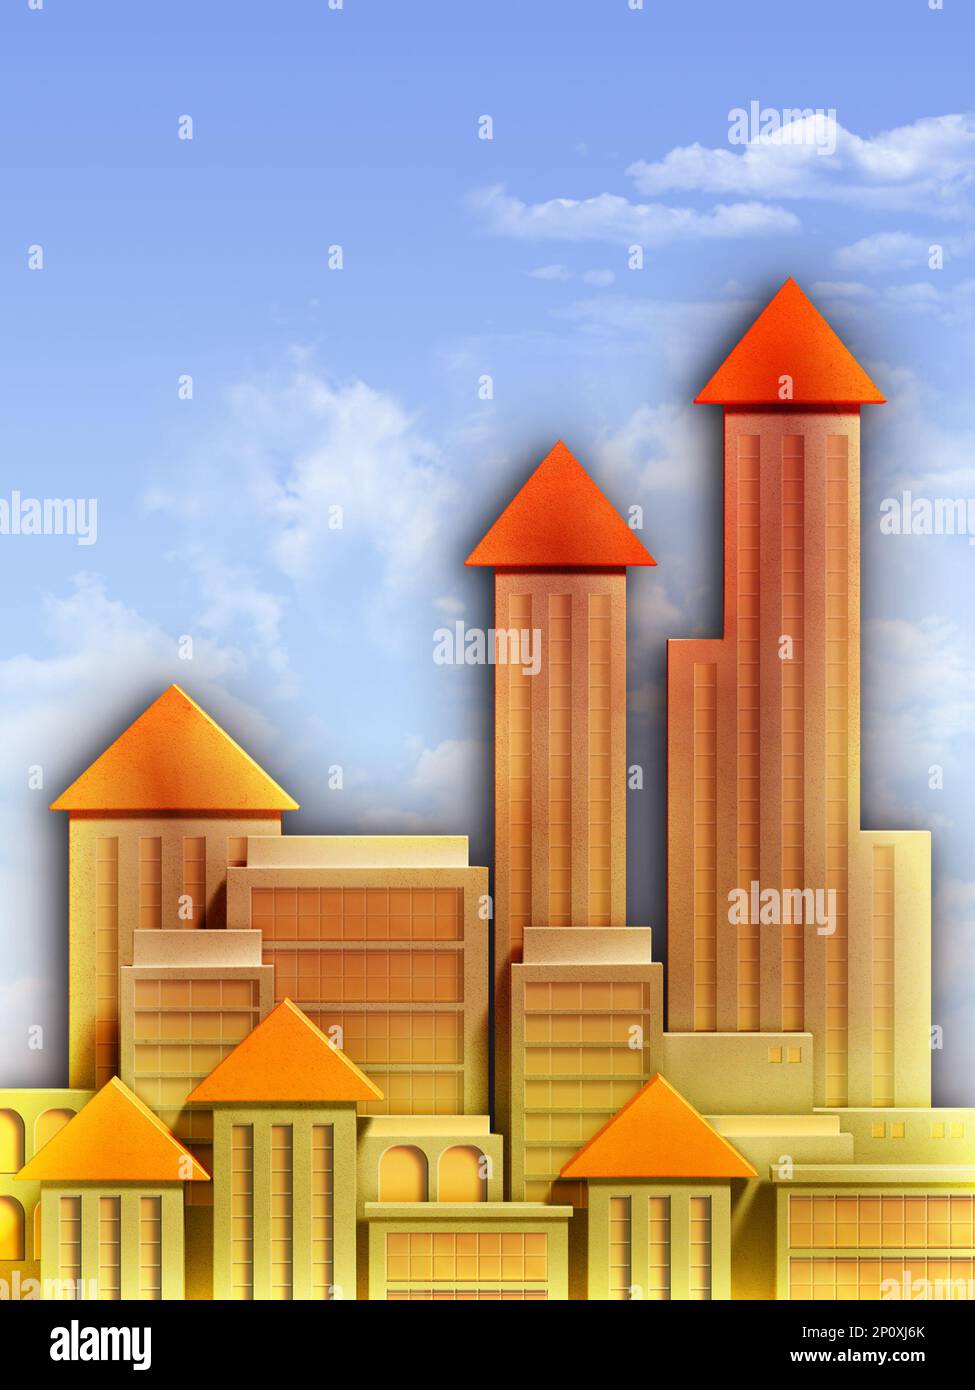 L'horizon d'une ville est représenté par un graphique montrant l'augmentation des prix de l'immobilier. Illustration numérique. Banque D'Images